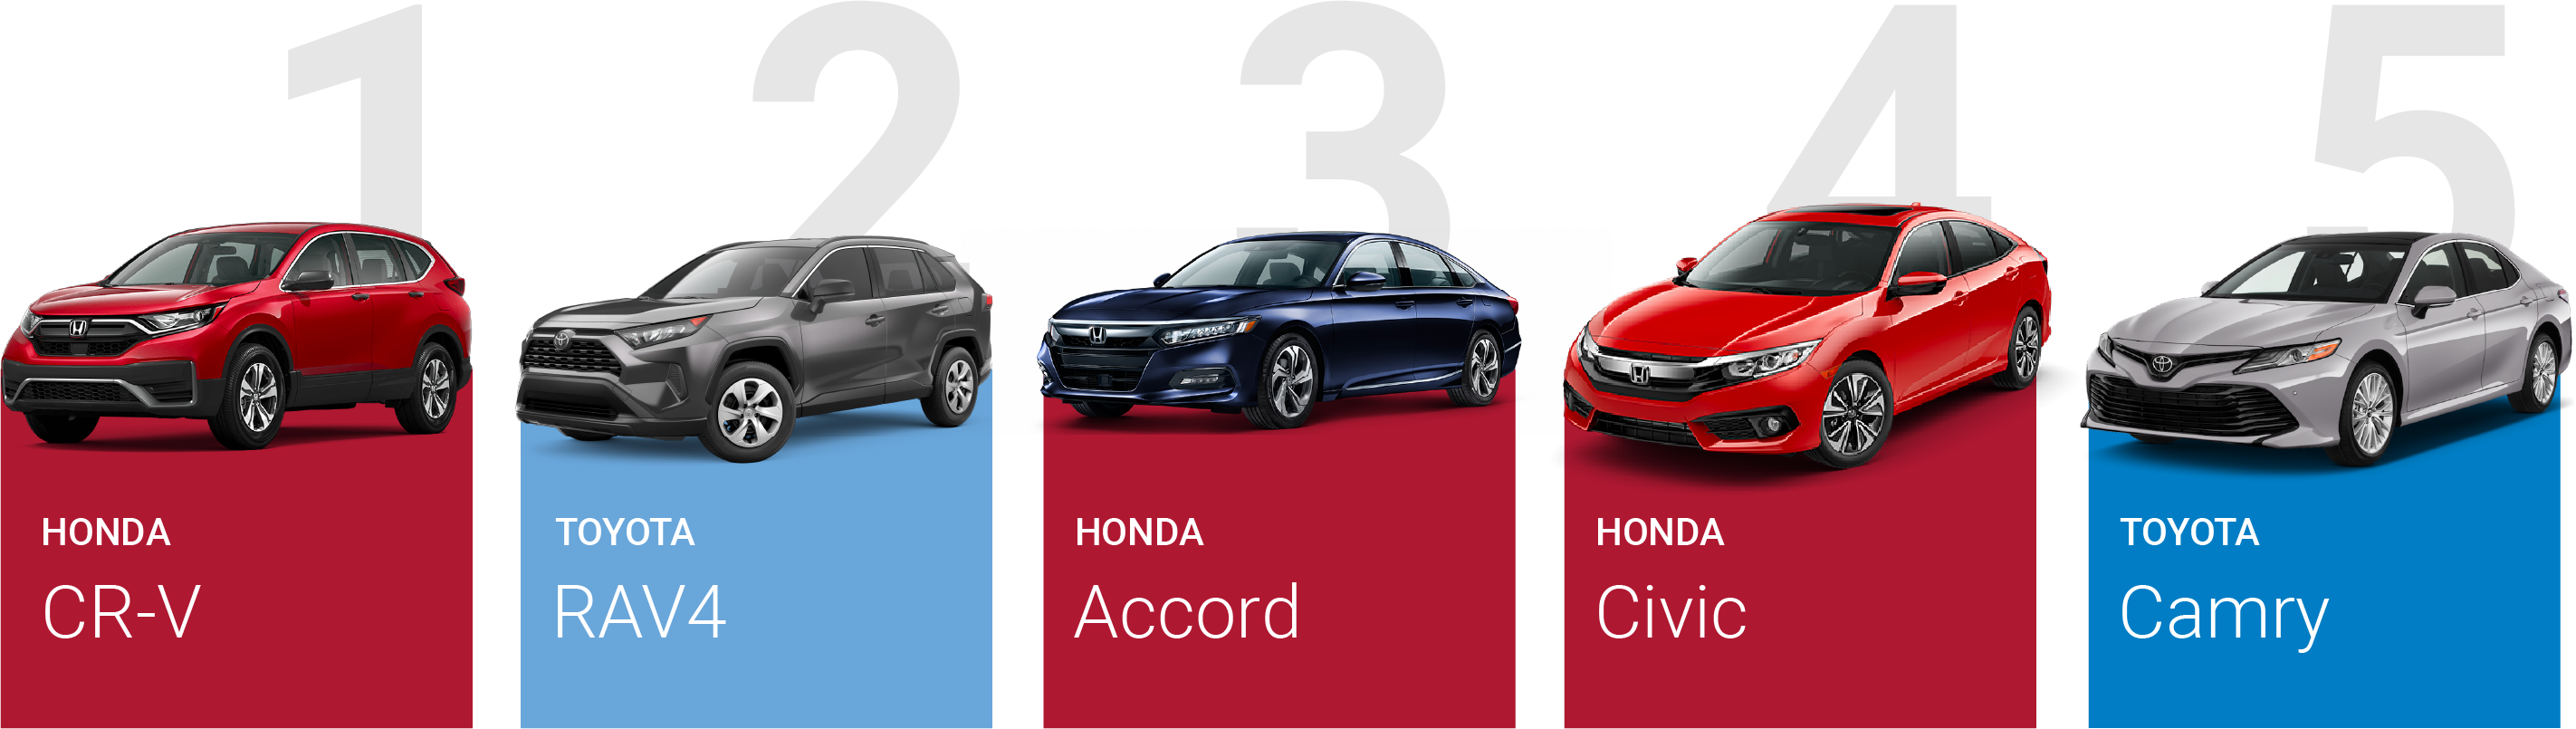 1. Honda CR-V; 2. Toyota RAV4; 4. Honda Accord; 4. Honda Civic; 5. Toyota Camry